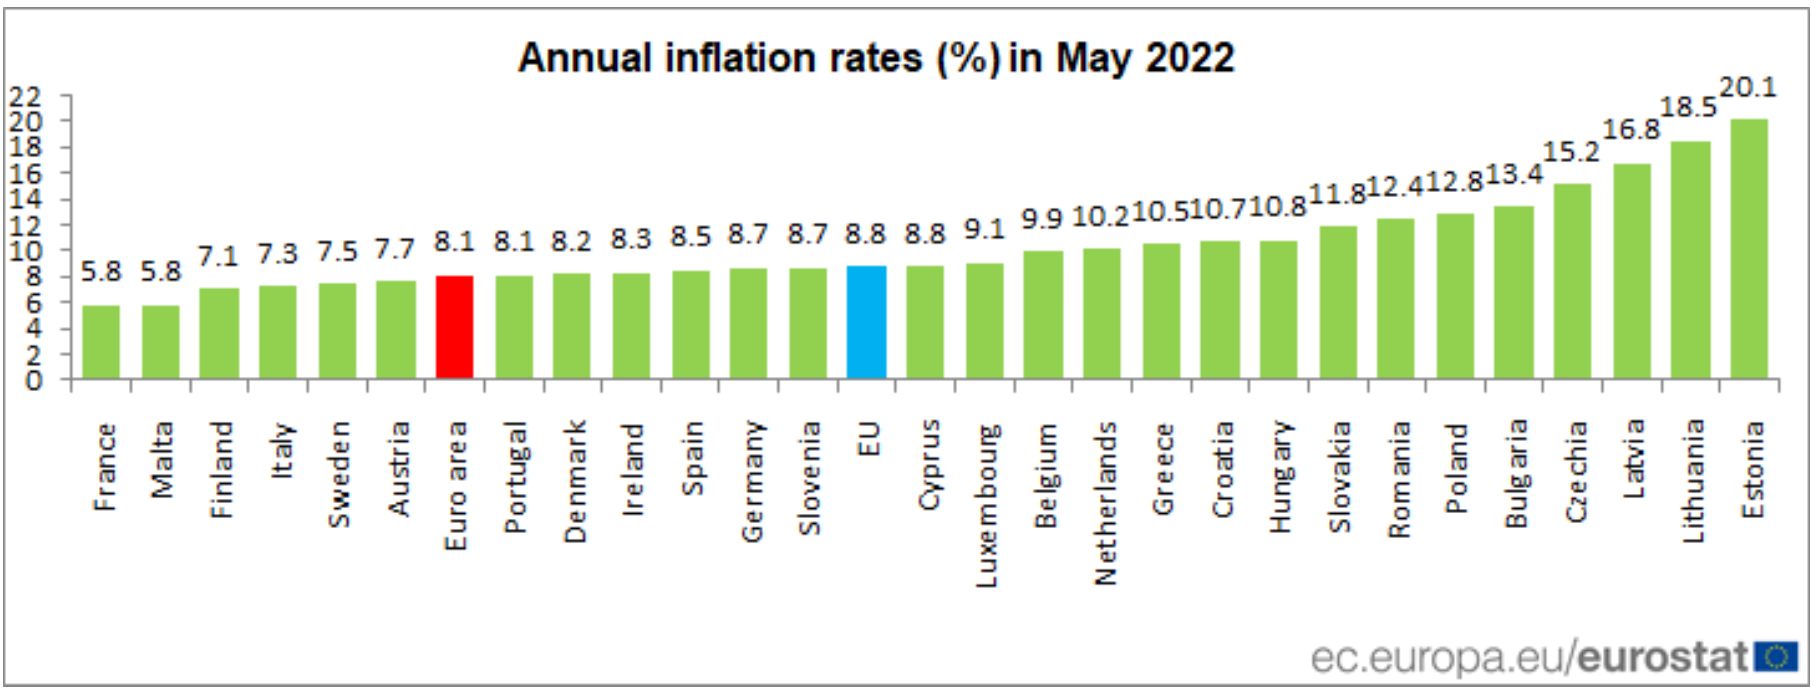 Franciaországban volt a legalacsonyabb, Észtországban a legmagasabb az infláció májusban az Európai Unióban. Magyarország nagyjából a középmezőnyben helyezkedik el